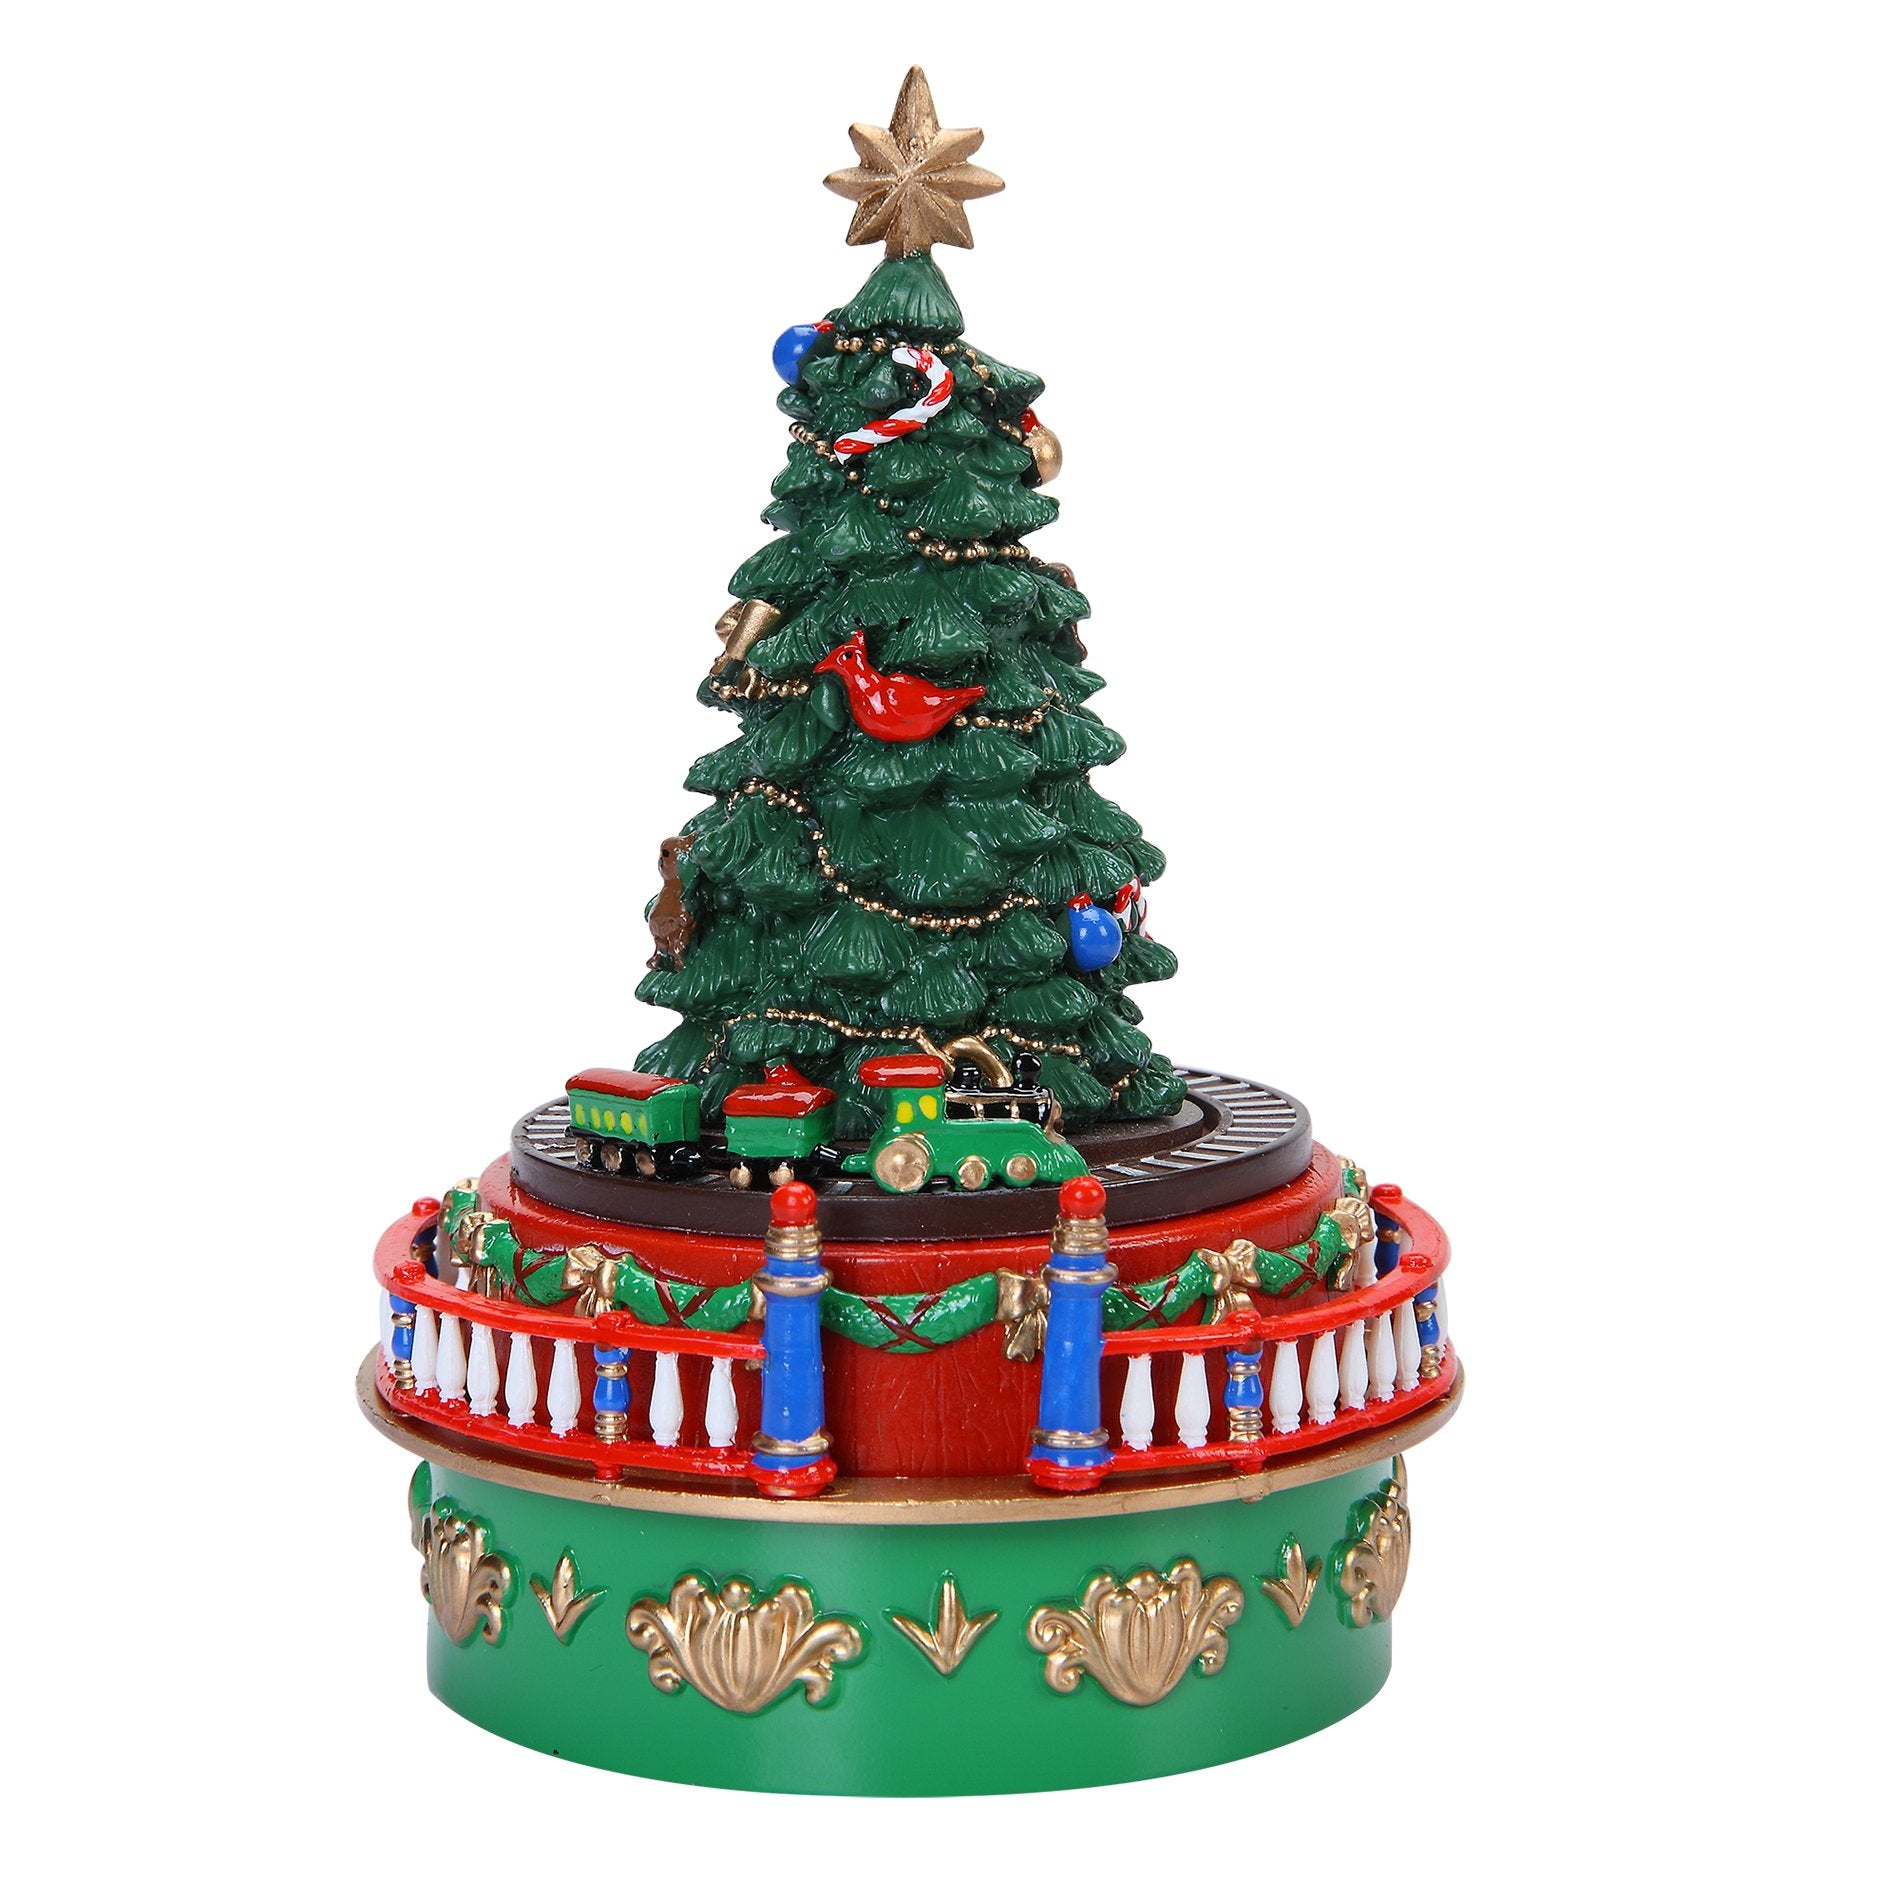 Mr. Christmas - Animated Musical Tree